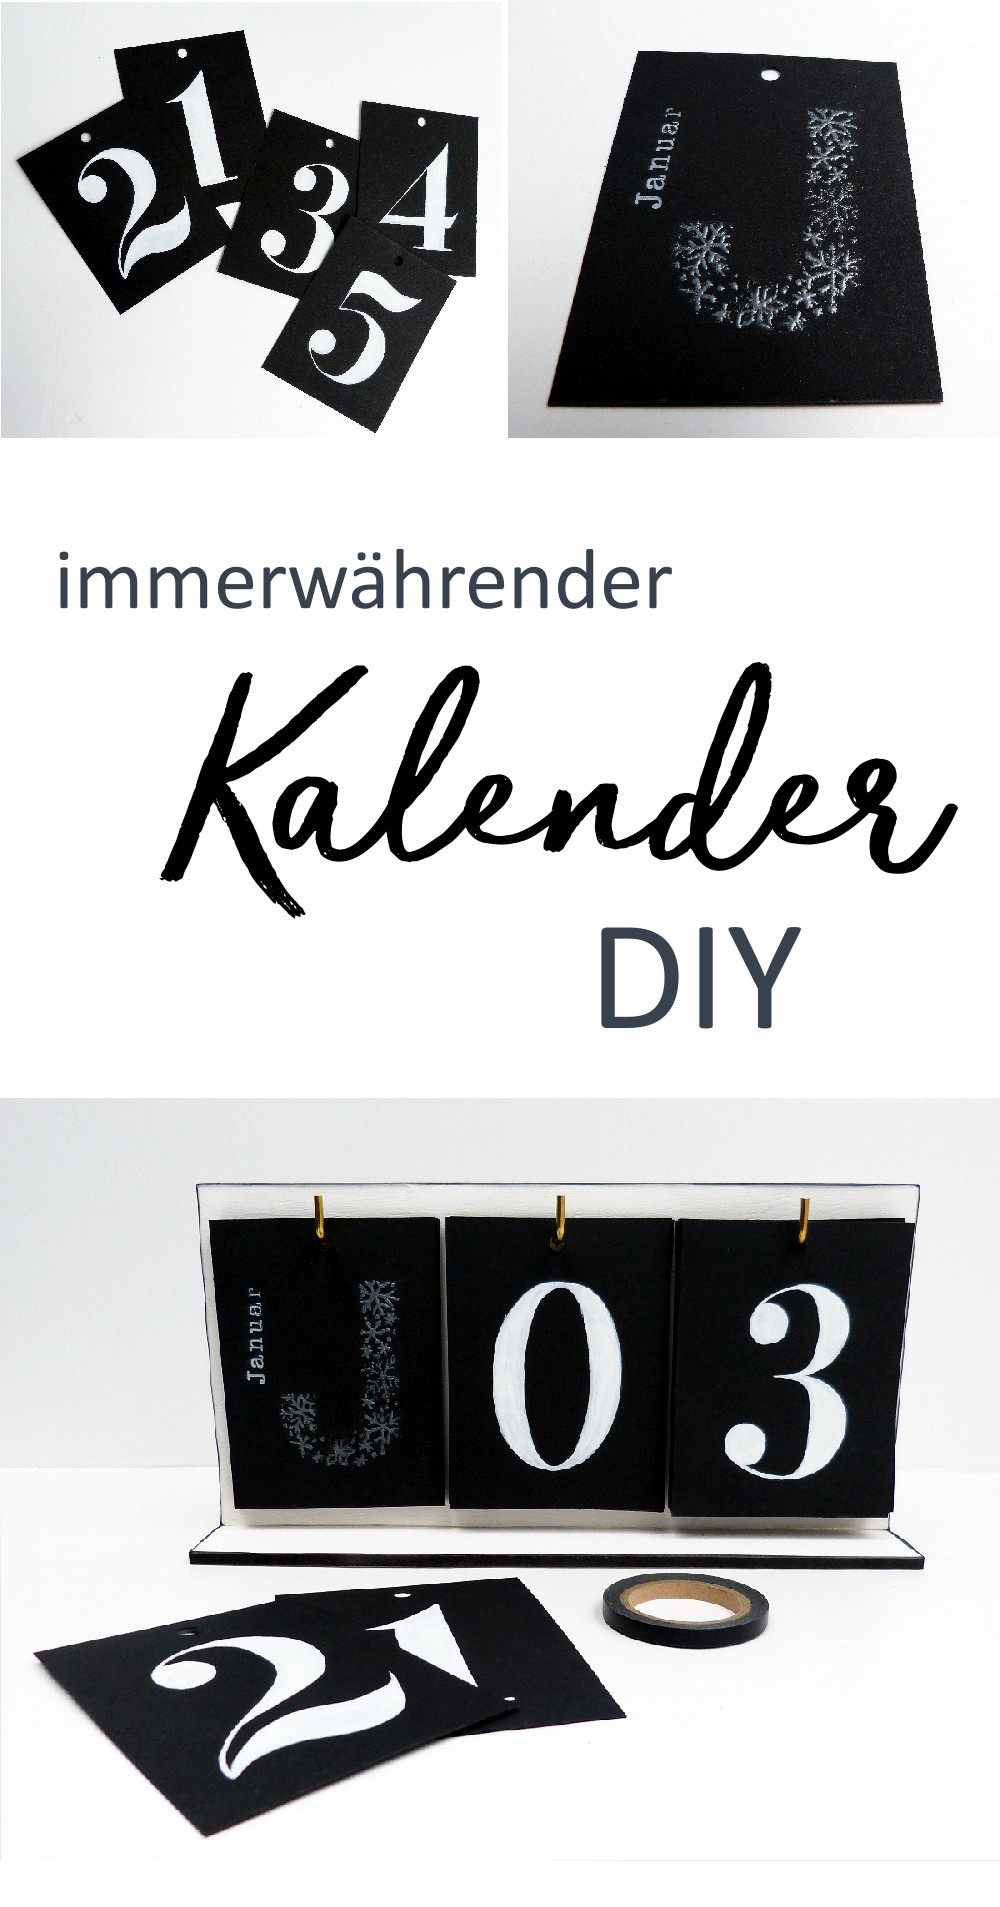 Immerwährender Kalender DIY. Anleitung für einen minimalistischen Kalender in schwarz-weiß.